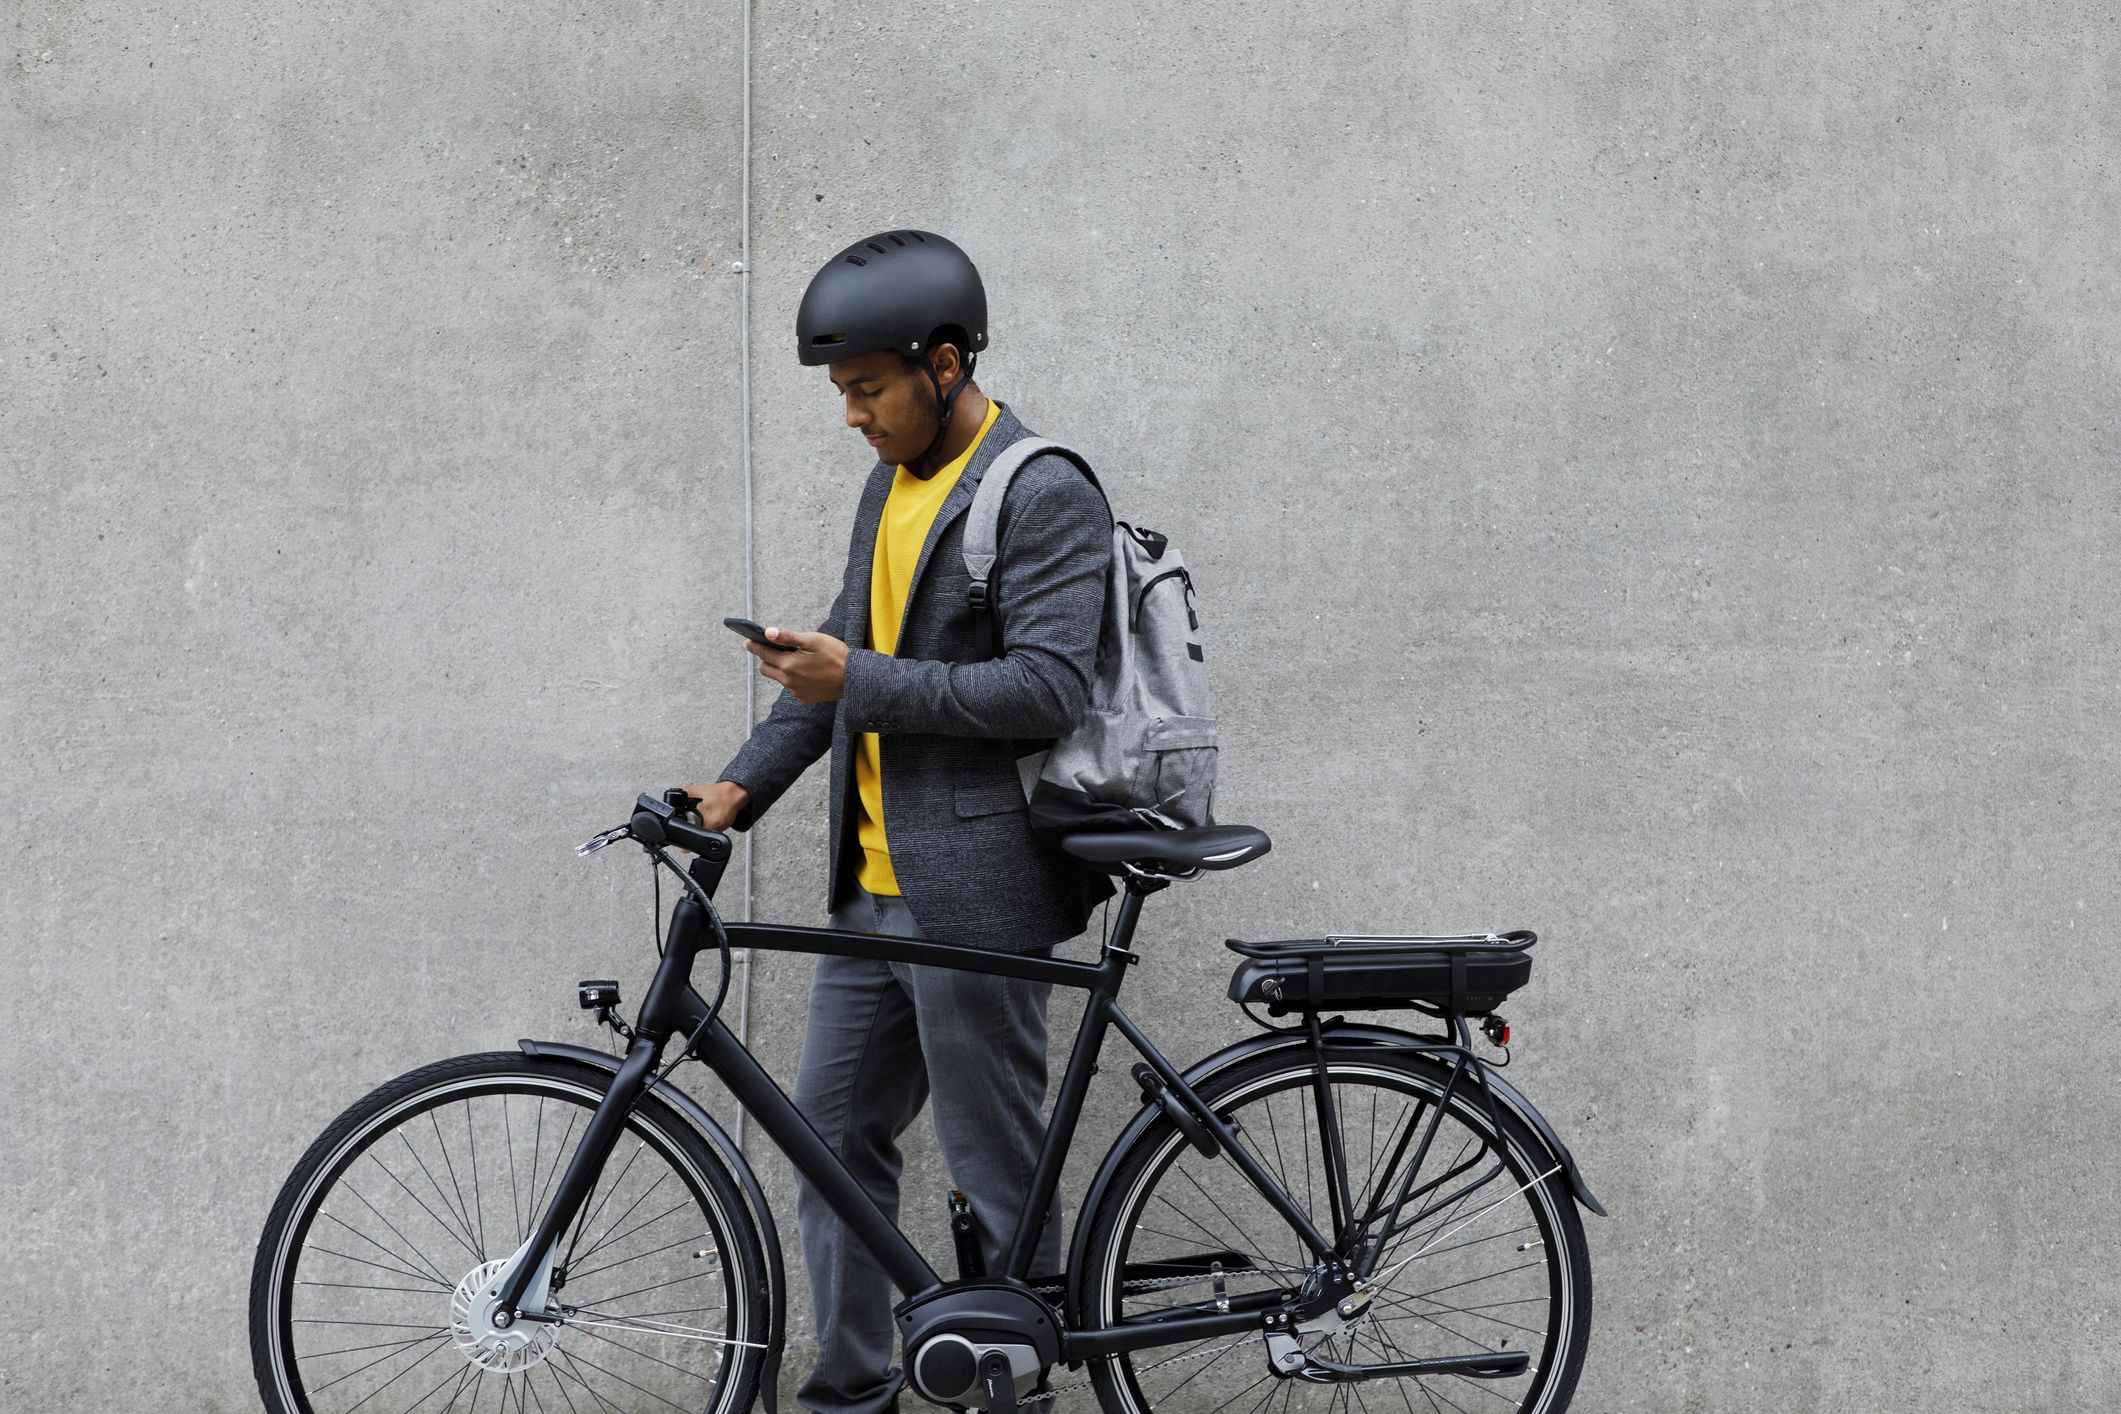 Bolsas para bicicletas: guía para saber cuál elegir - BICIO